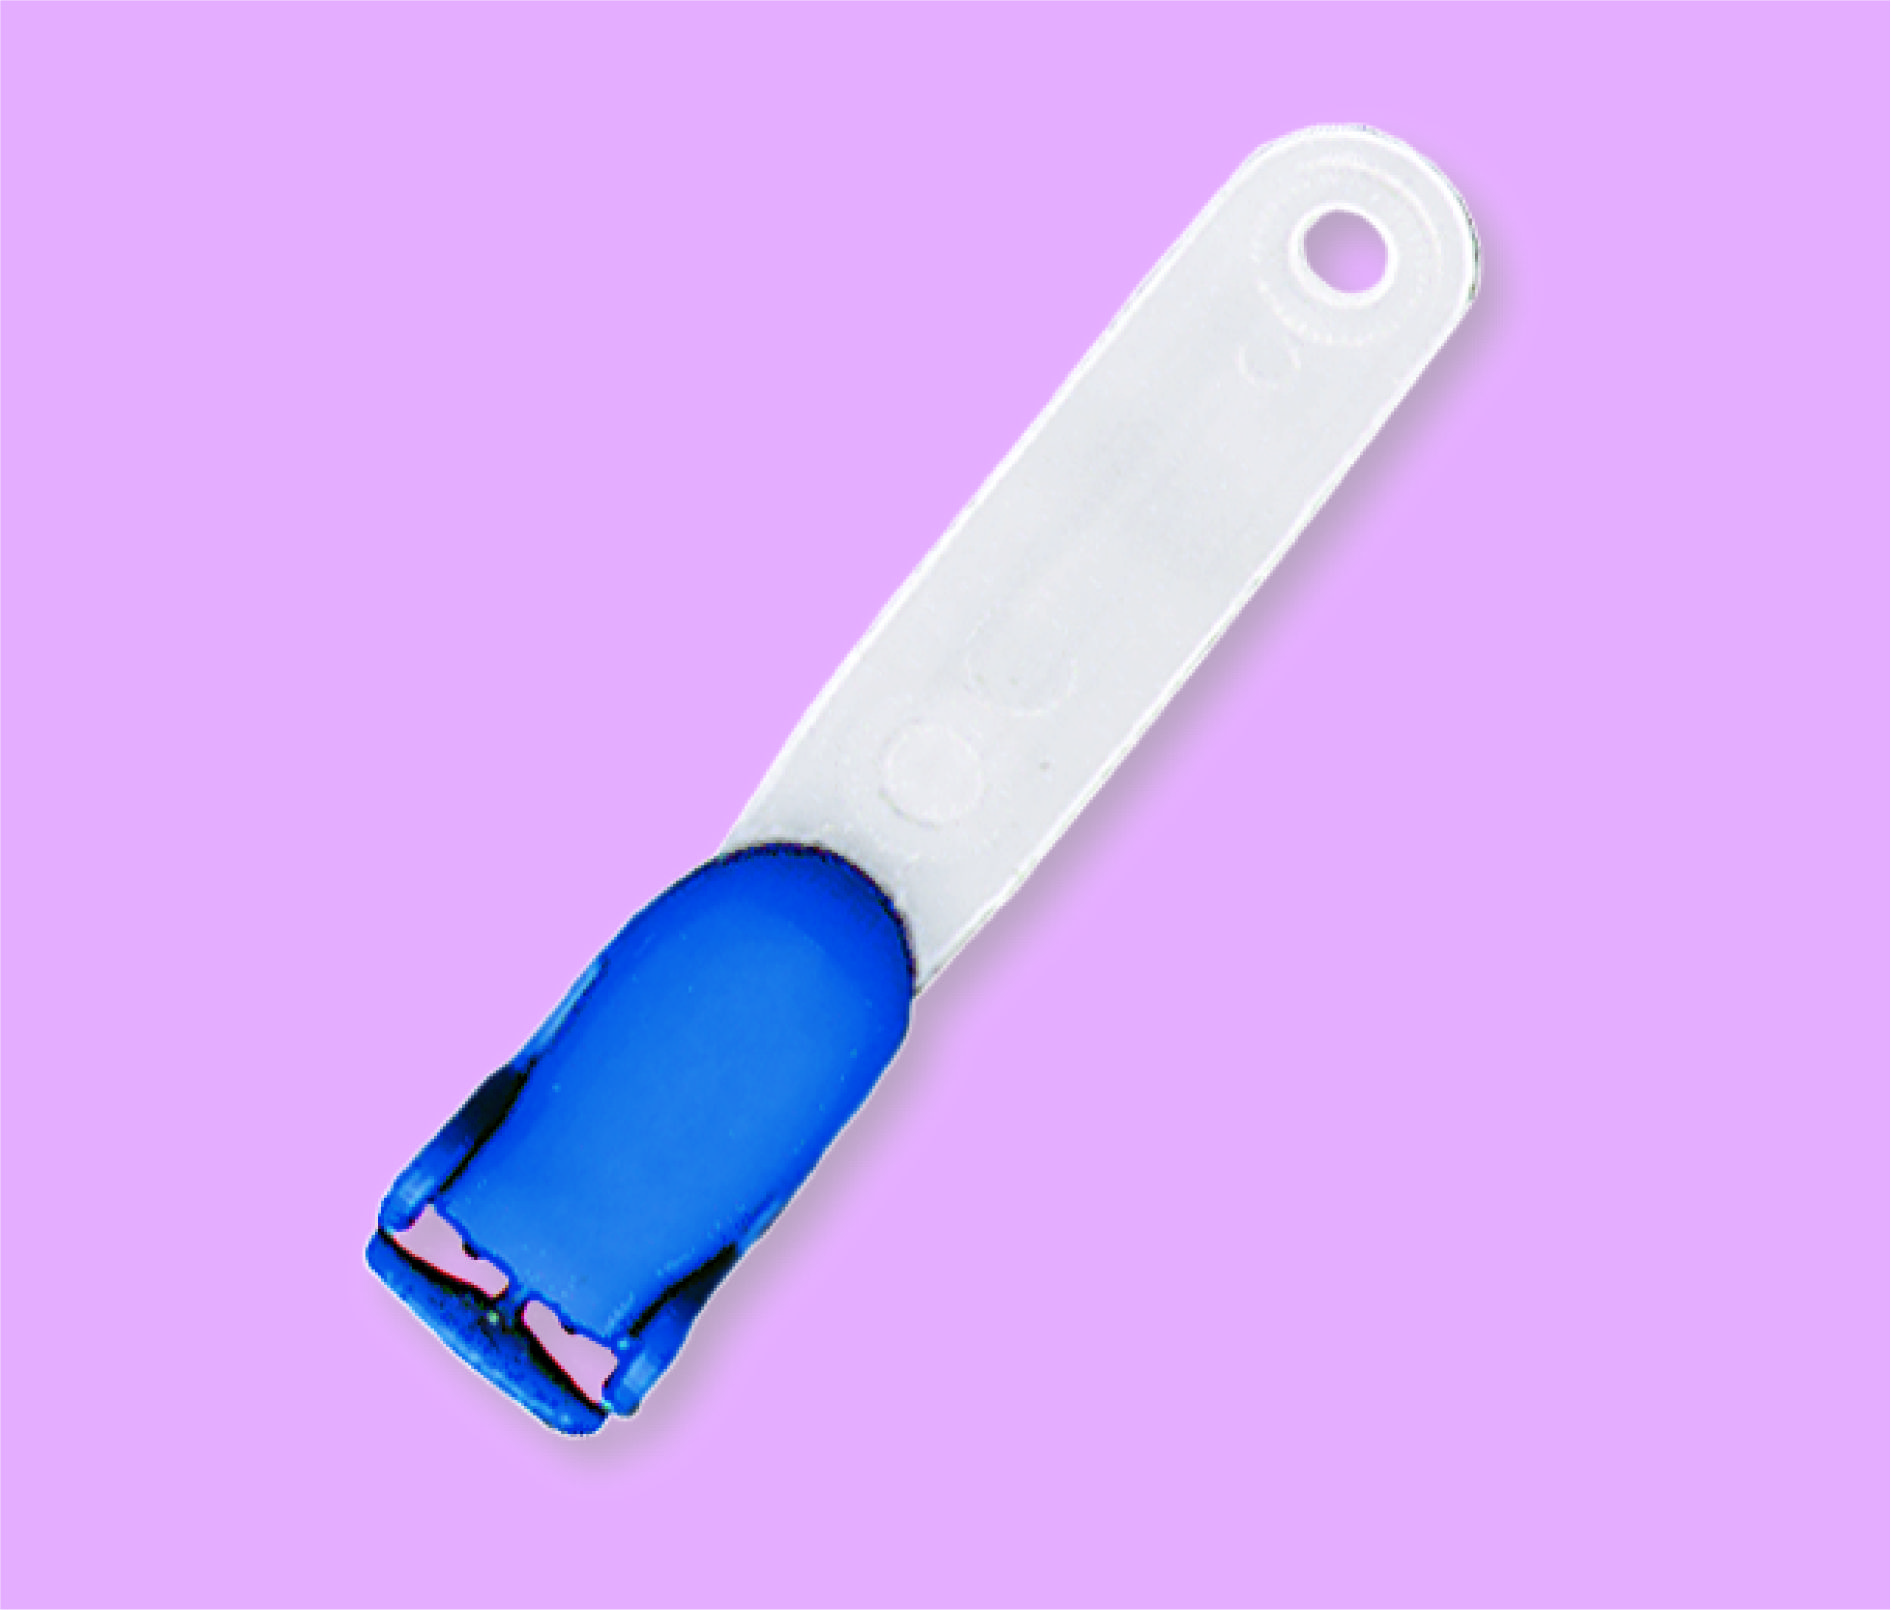 Clip in plastica blu con bretella in nylon modellato